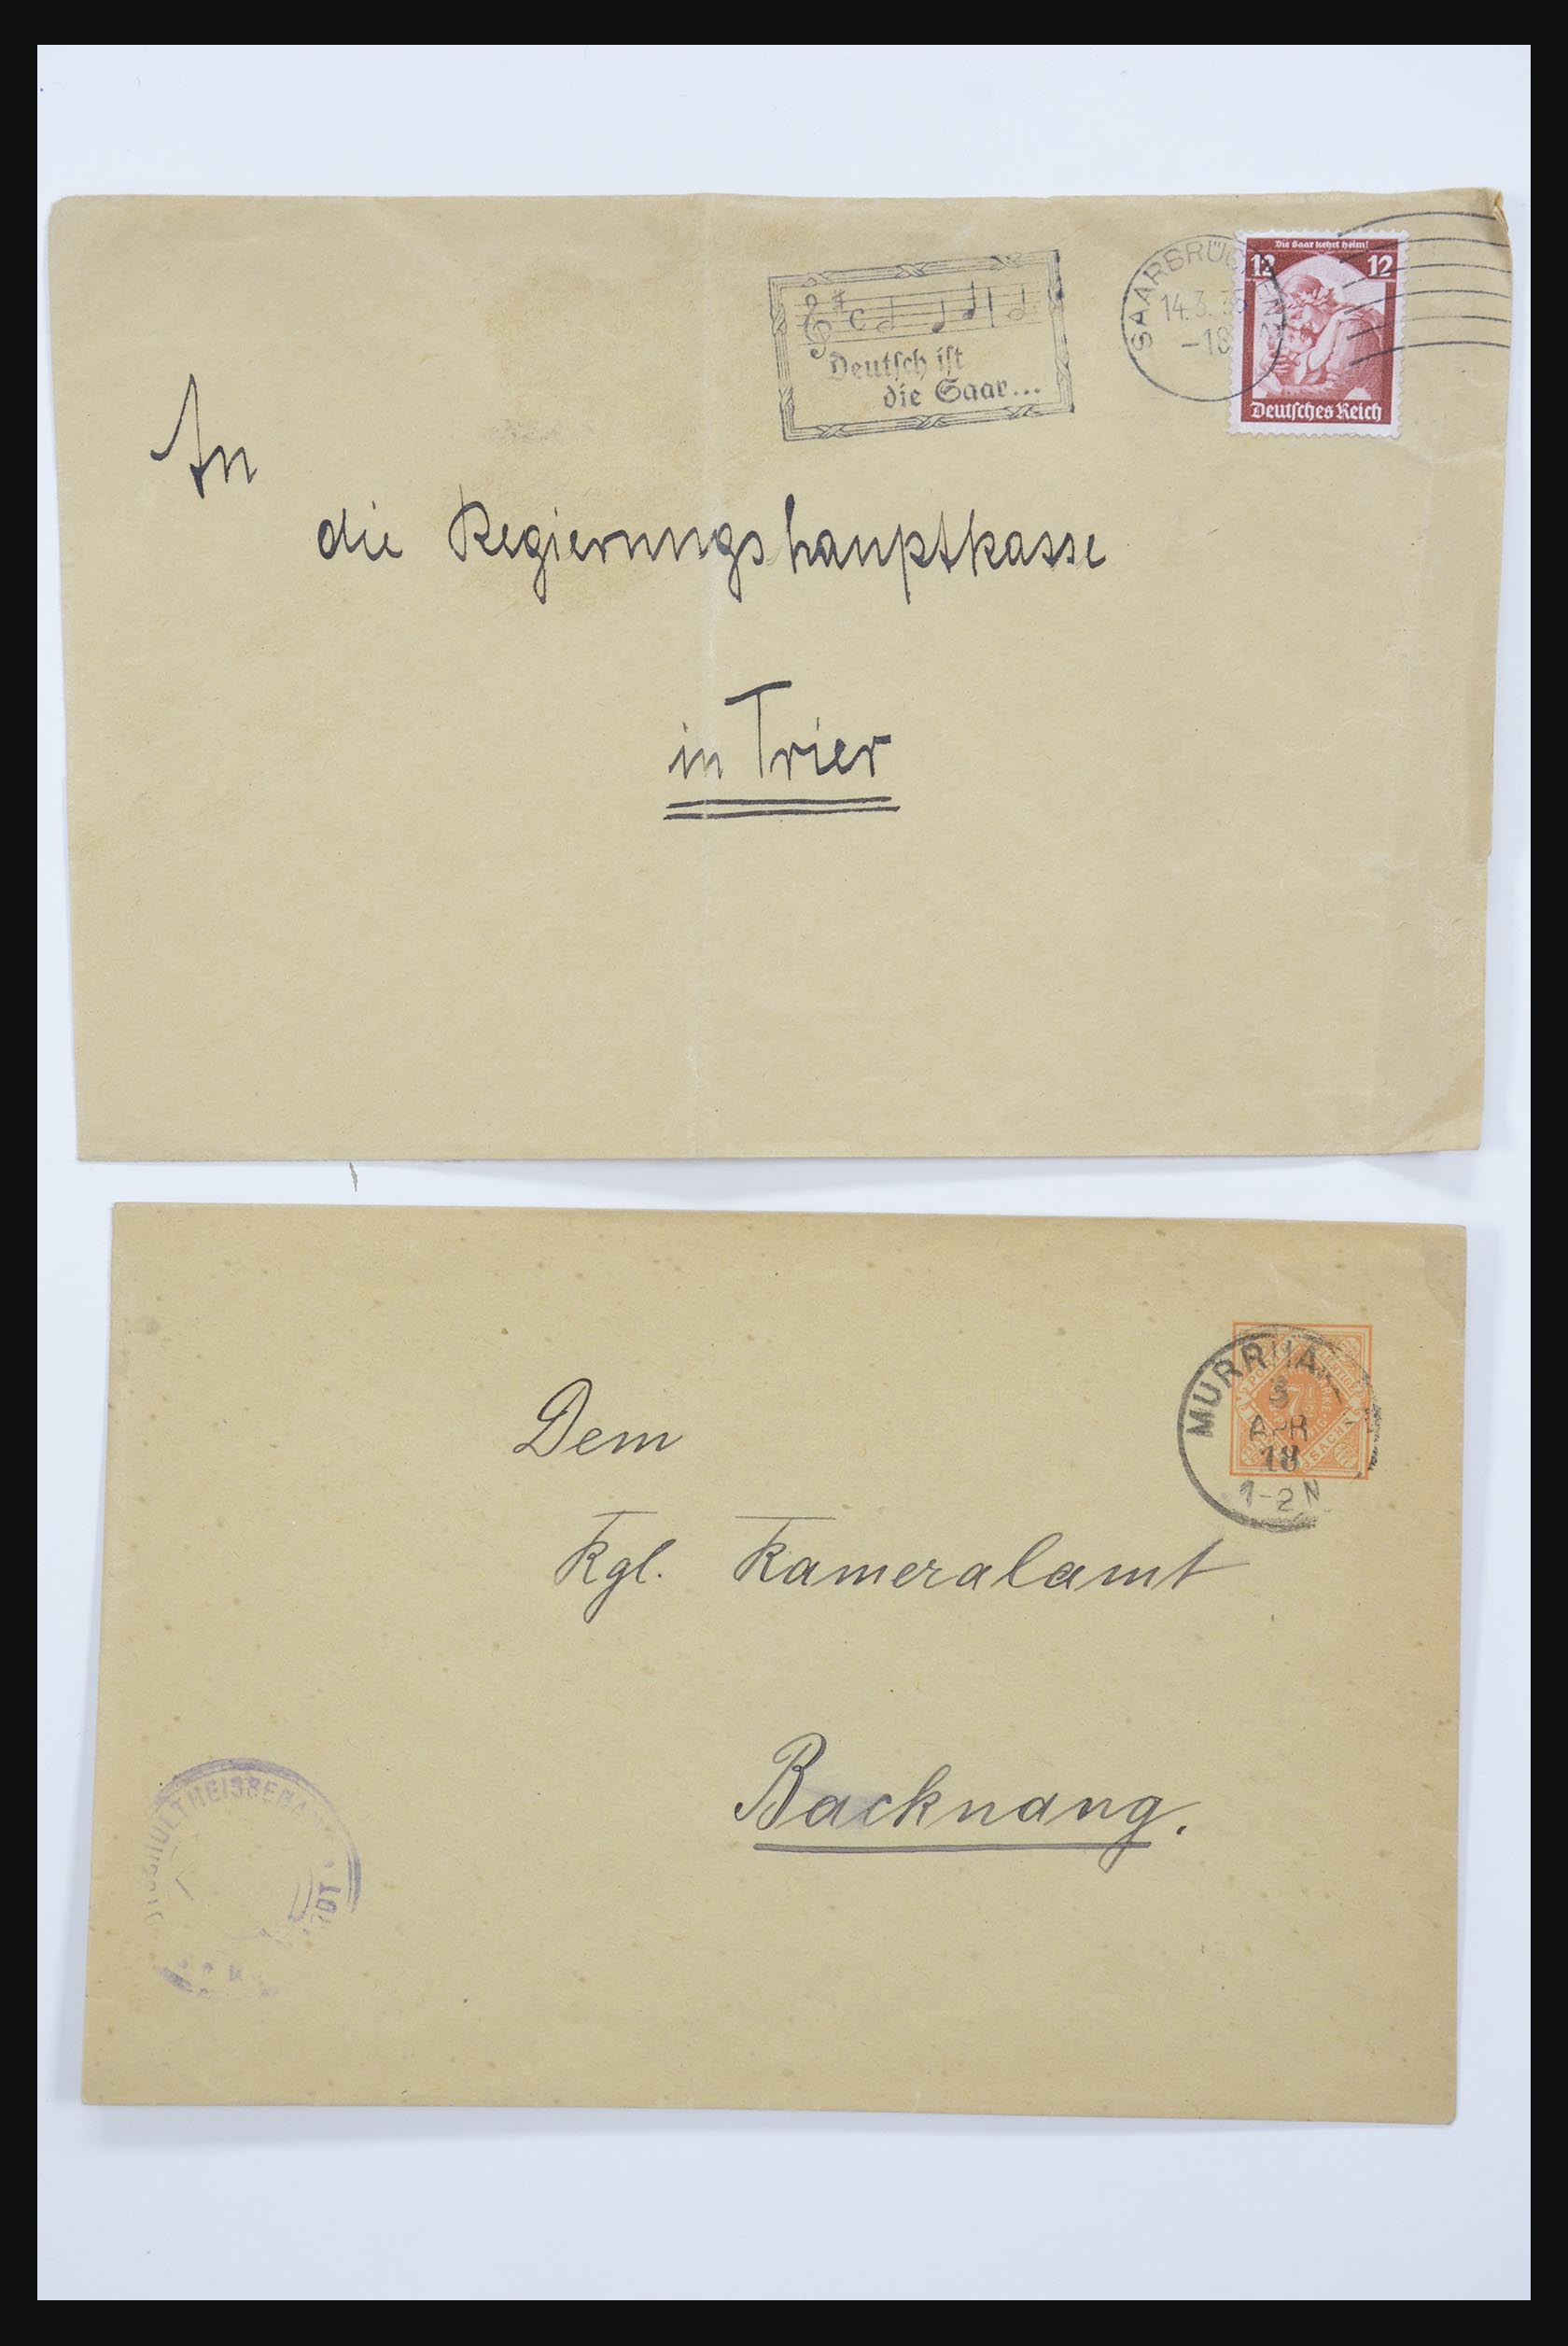 31952 041 - 31952 German Reich cards.